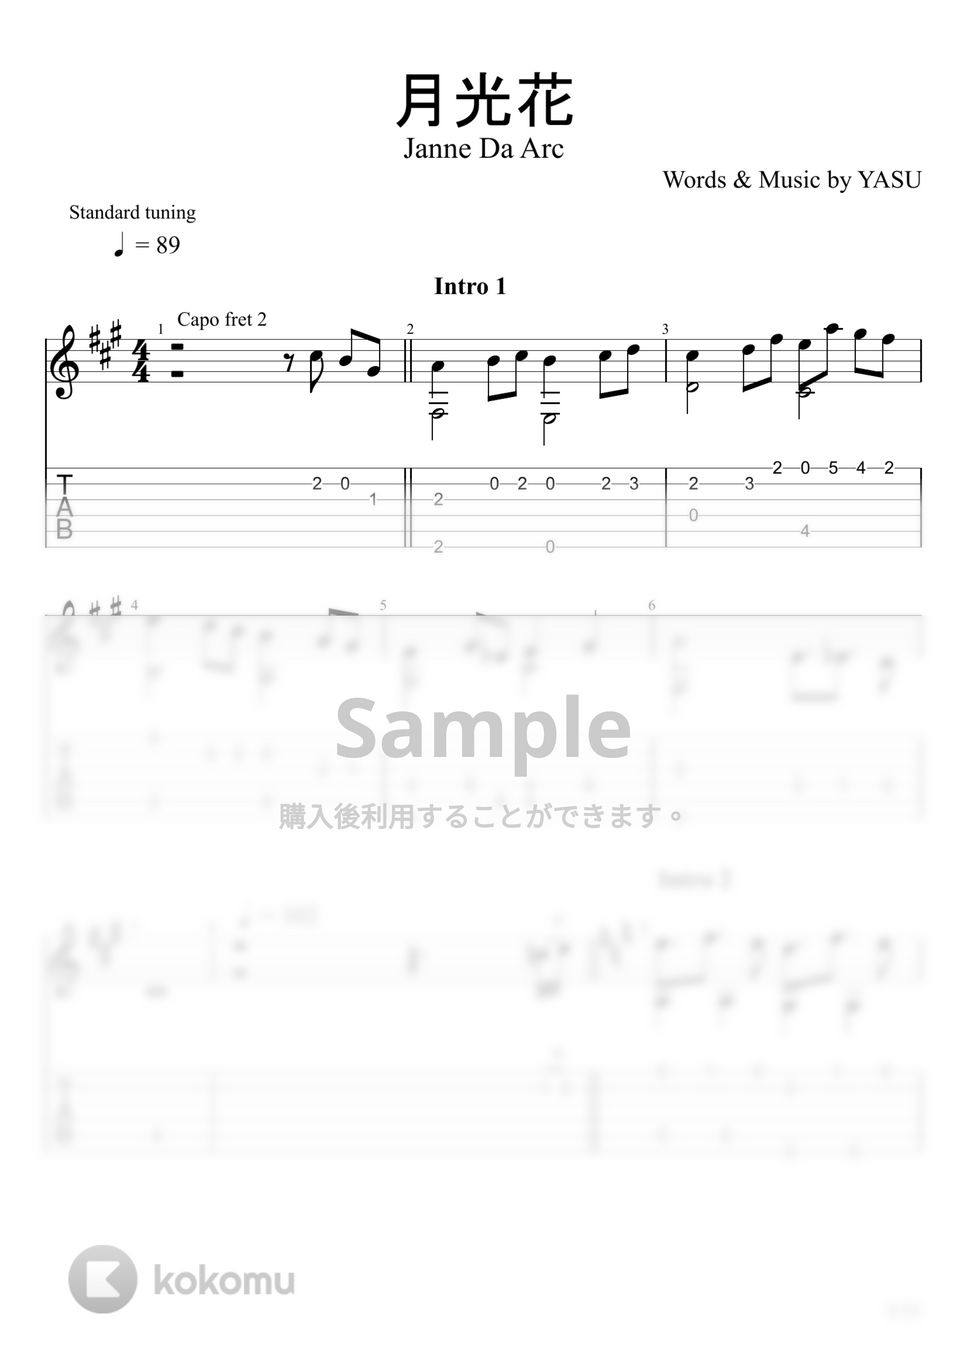 Janne Da Arc - 月光花 (ソロギター) by u3danchou